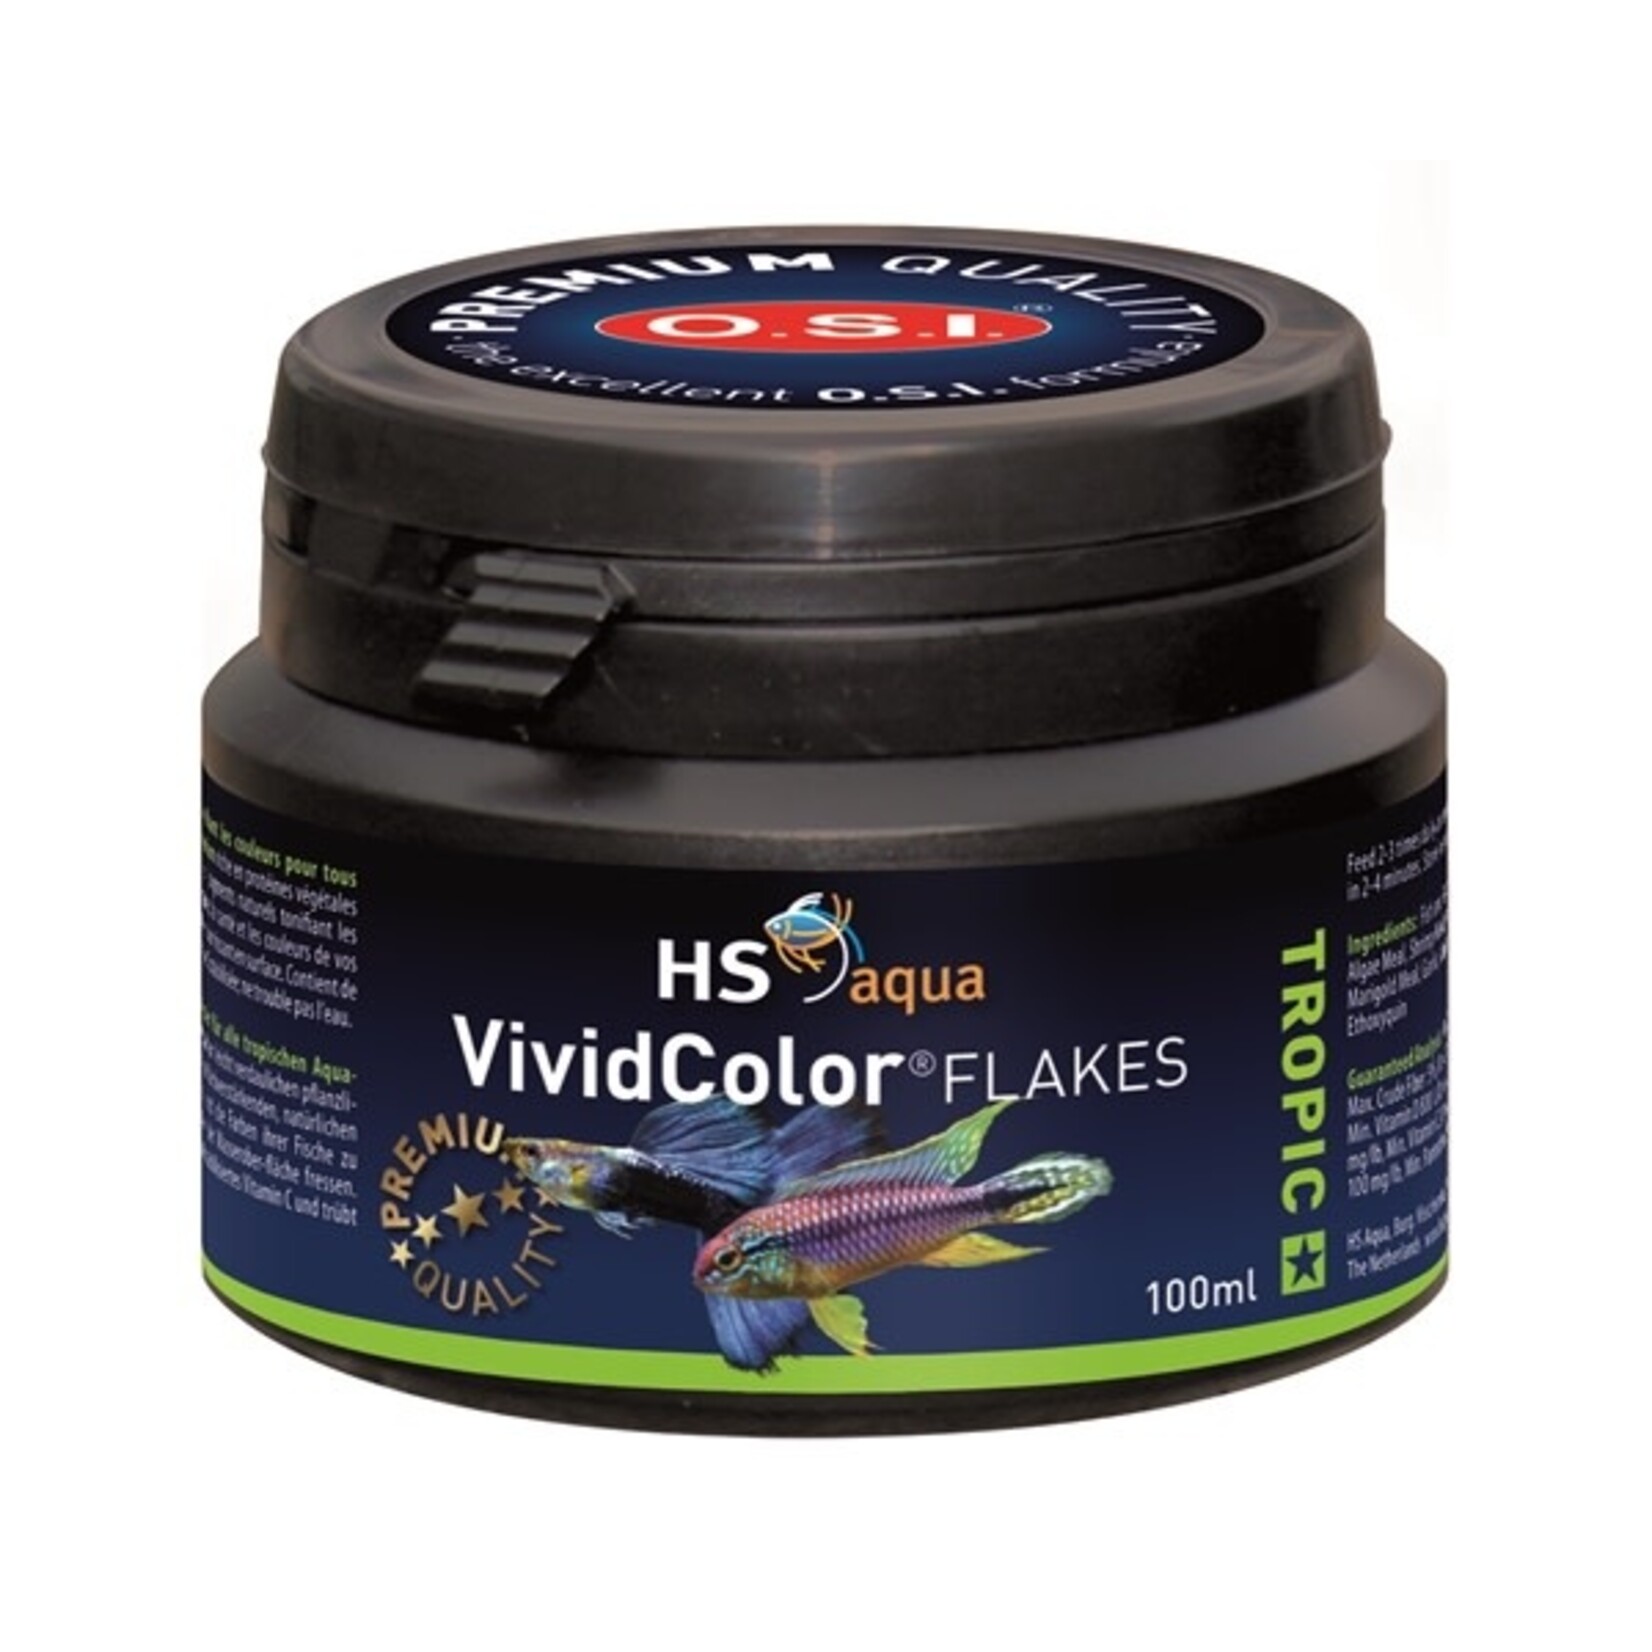 HS Aqua Vivid color flakes 100 ml